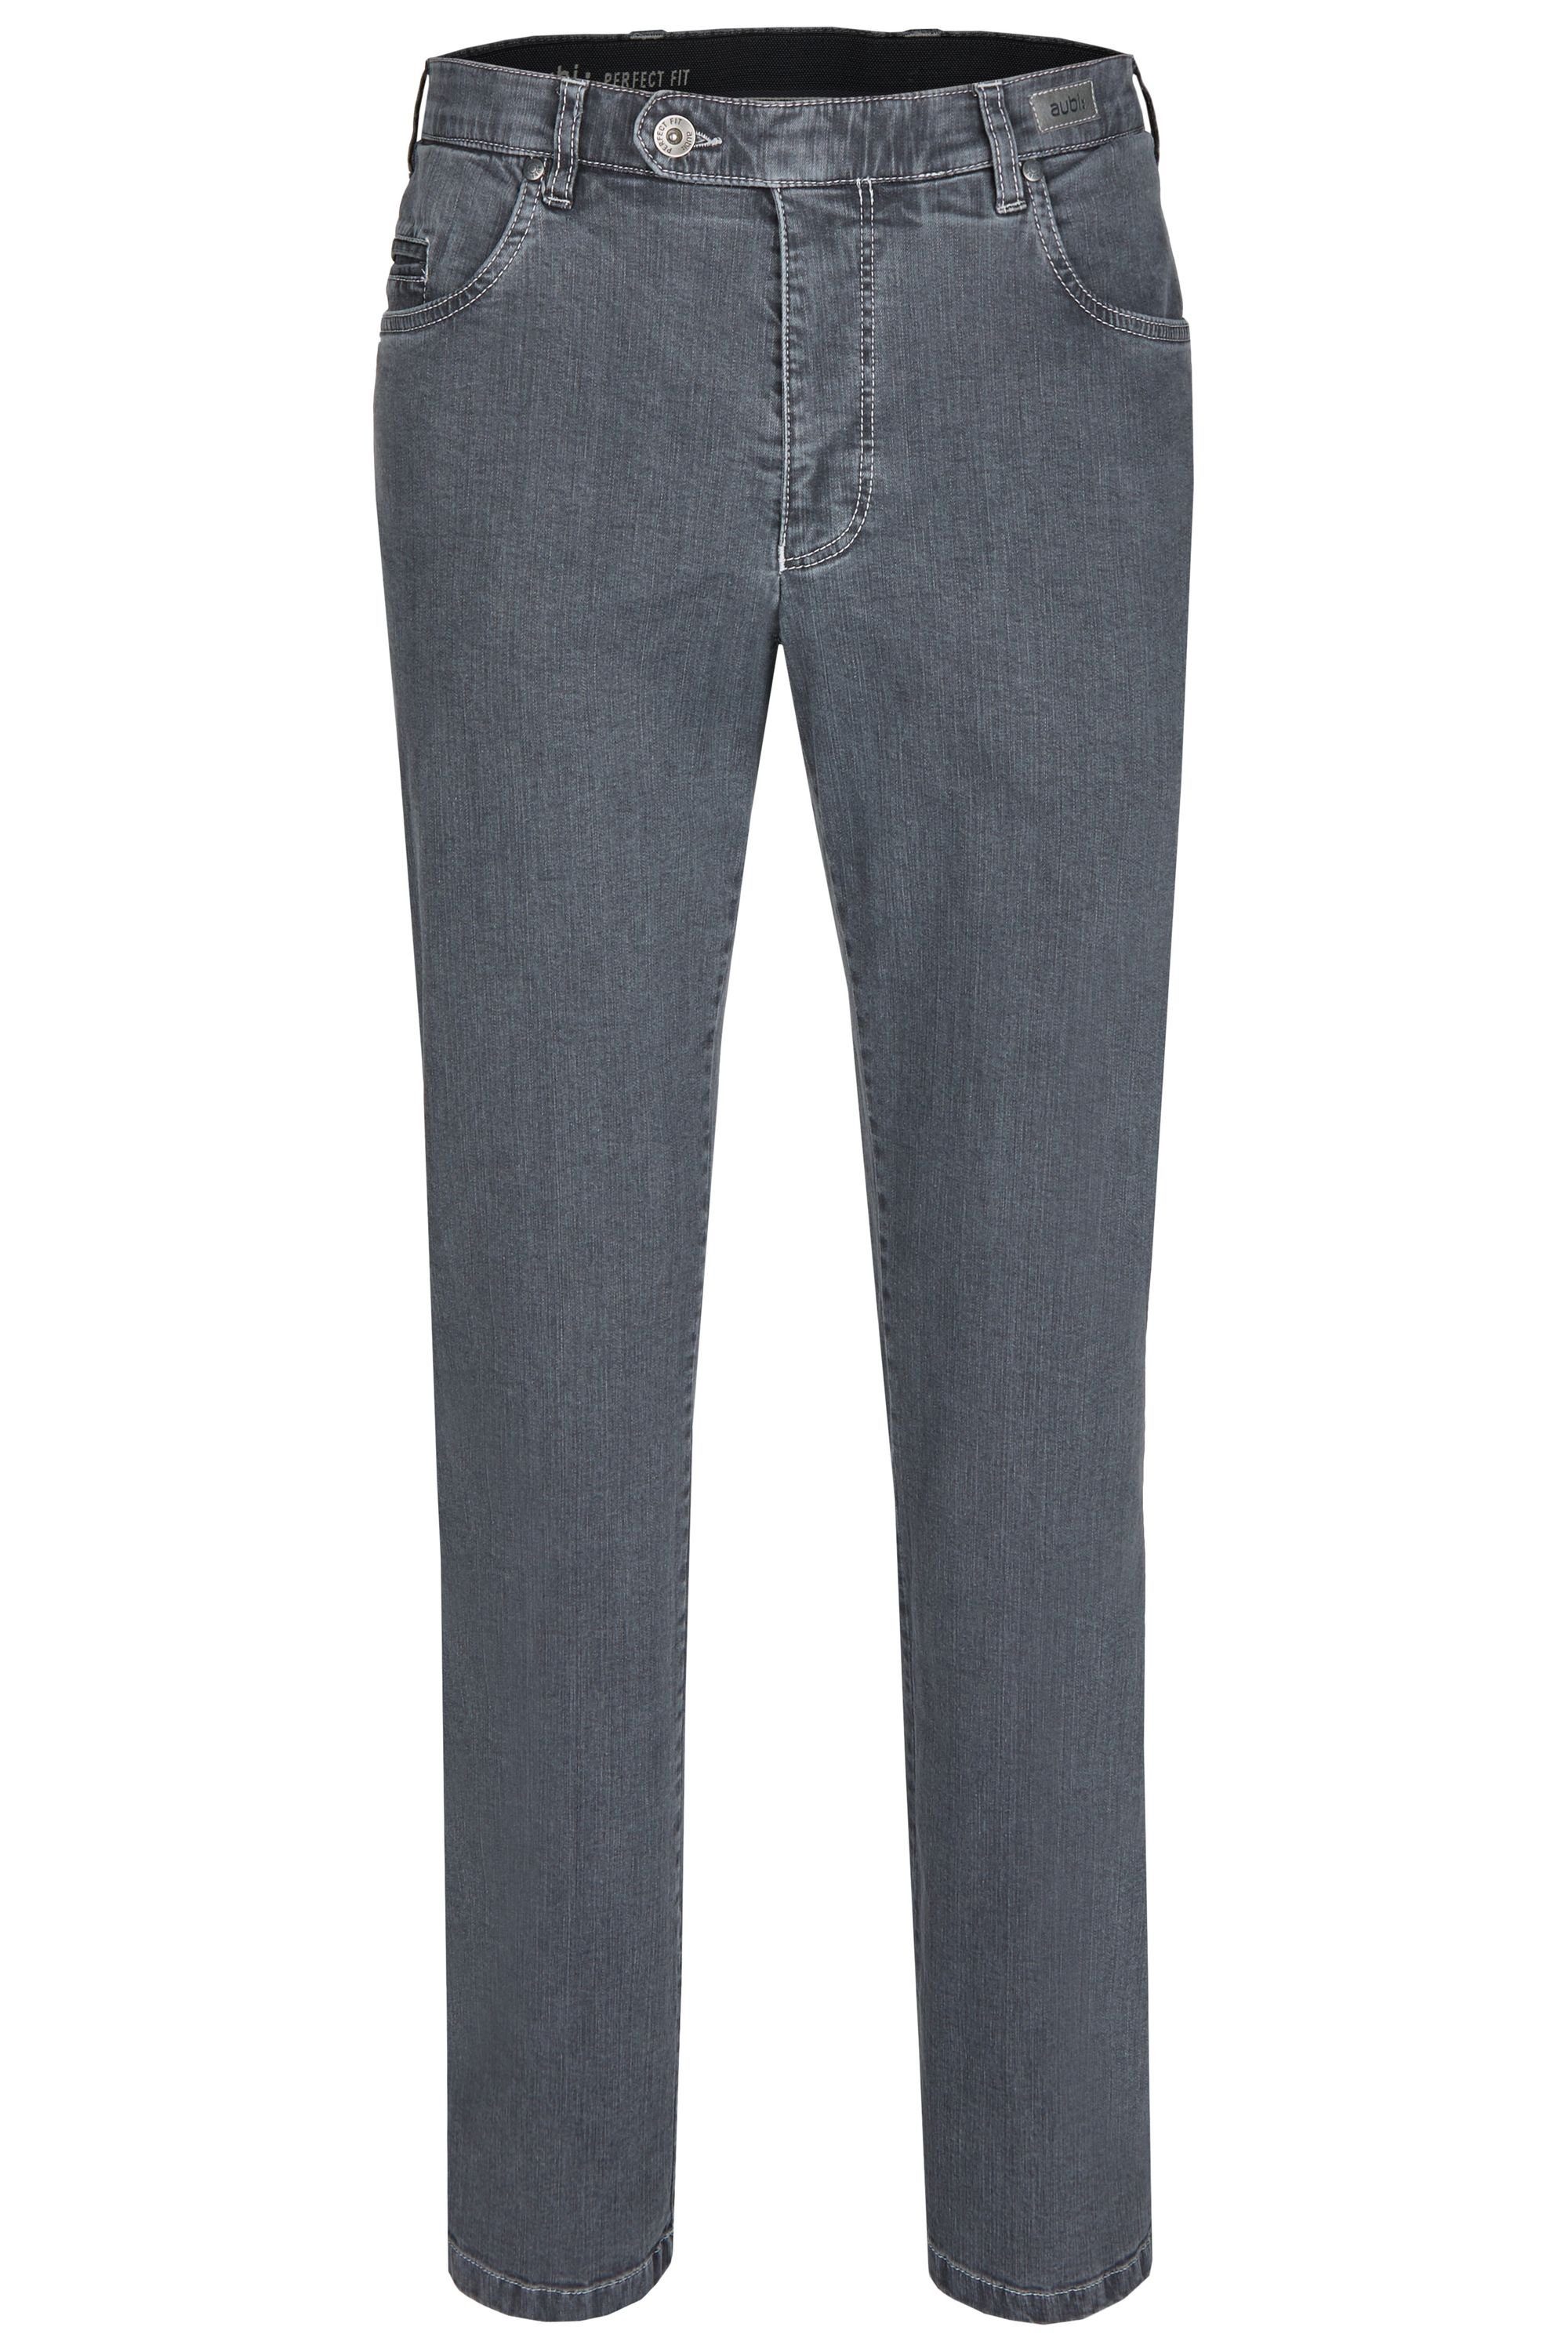 aubi: Bequeme Jeans aubi Perfect Fit Herren Ganzjahres Jeans Hose Stretch aus Baumwolle High Flex Modell 577 grey (54)